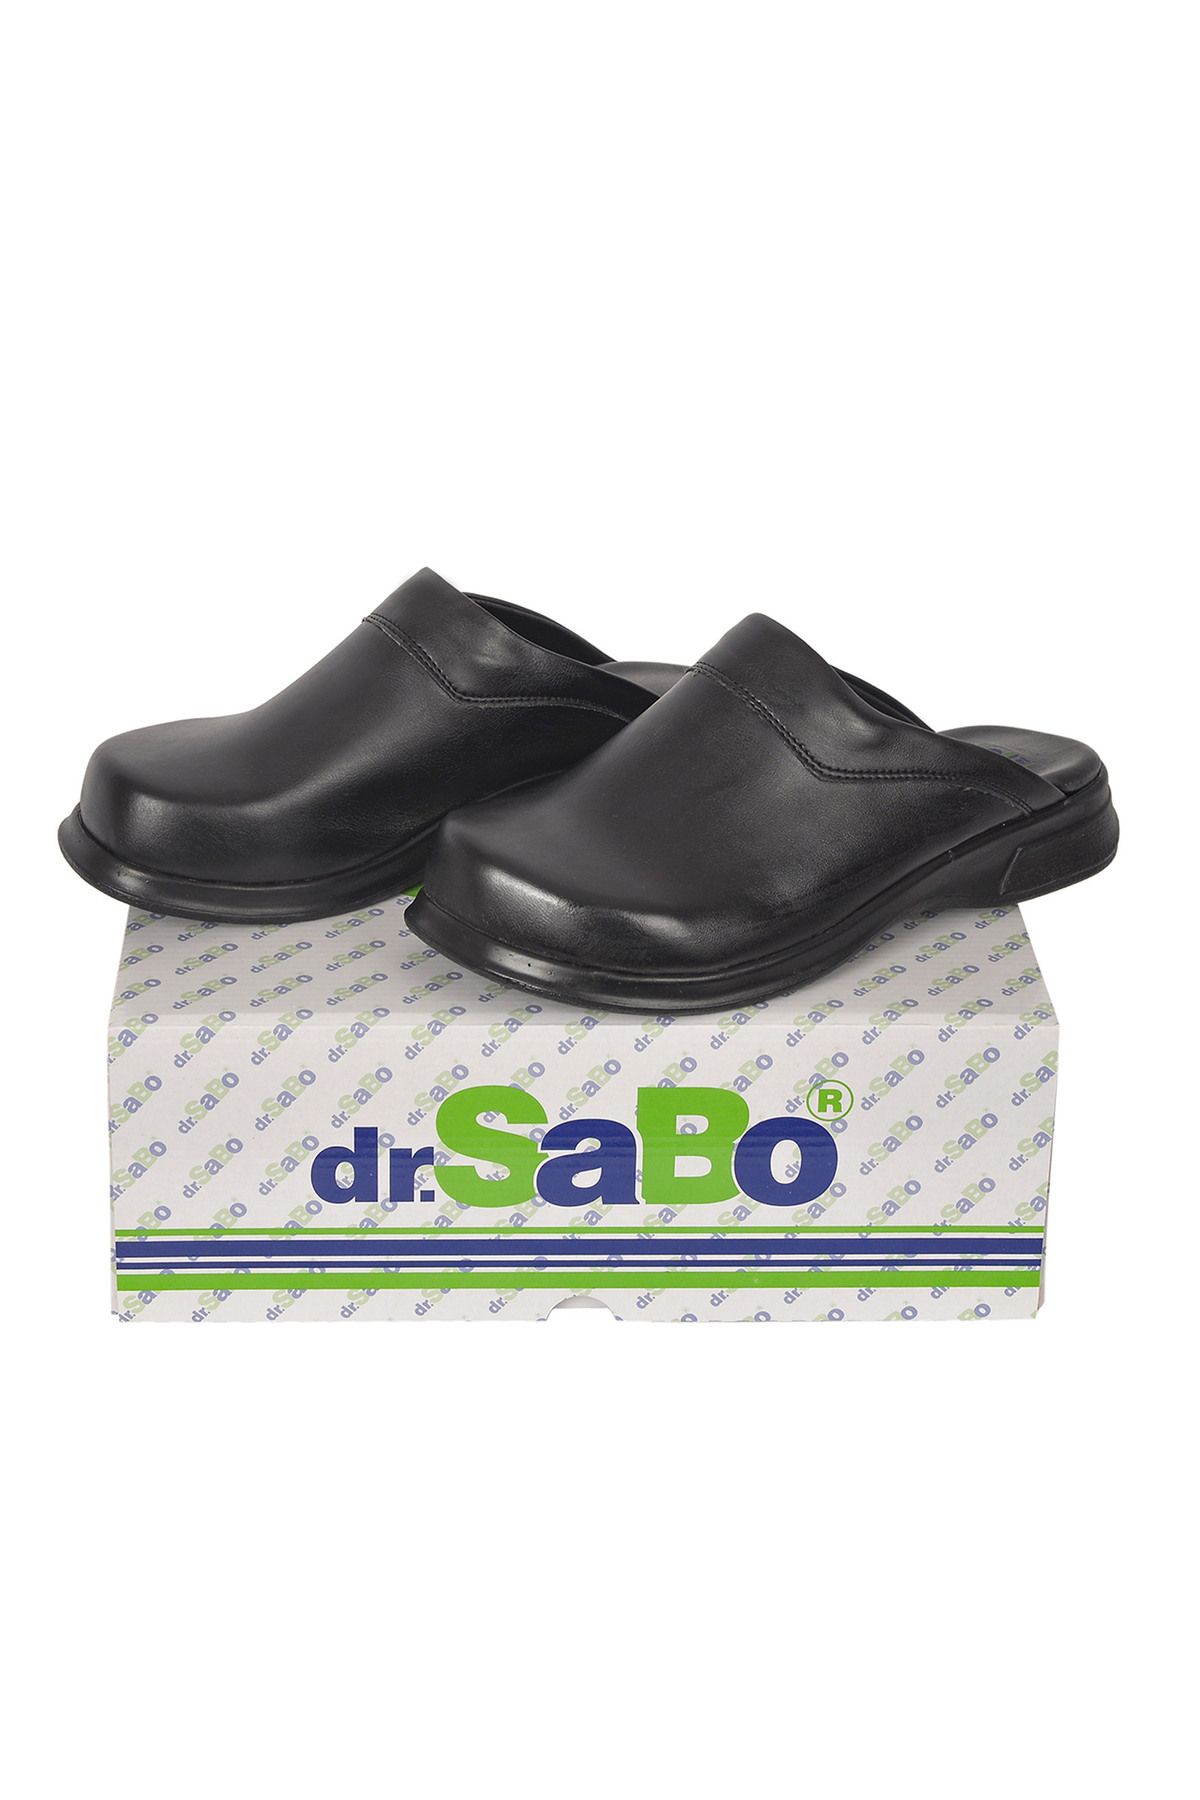 DR SABO Siyah Aşçı Sabo Terlik - Mutfak Terliği Ortopedik Deri